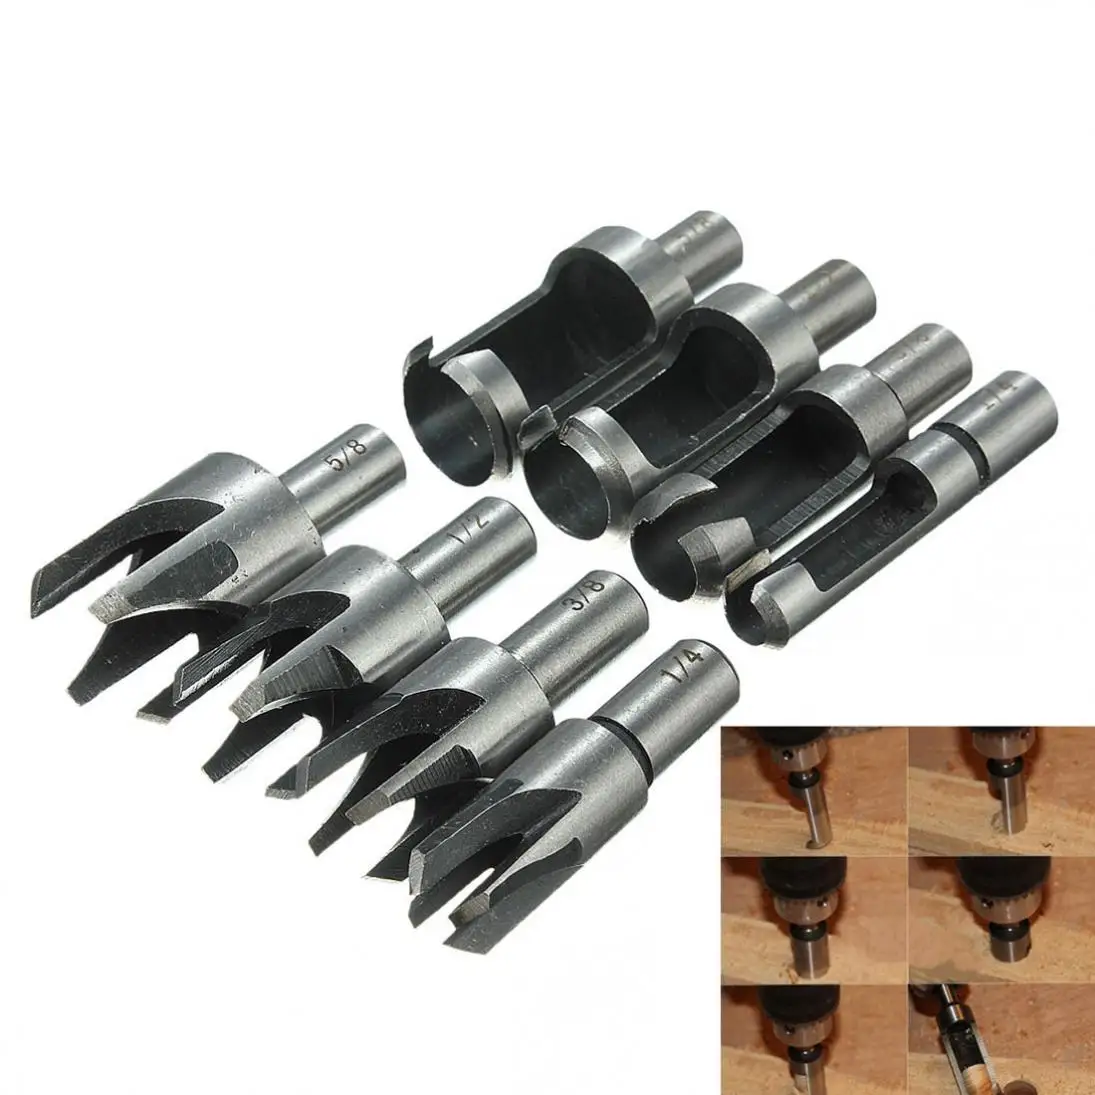 8Pcs HSS Taper Claw Type Wood Plug Cutter Drill Bits Dia 1/4" 3/8" 1/2" 5/8" 